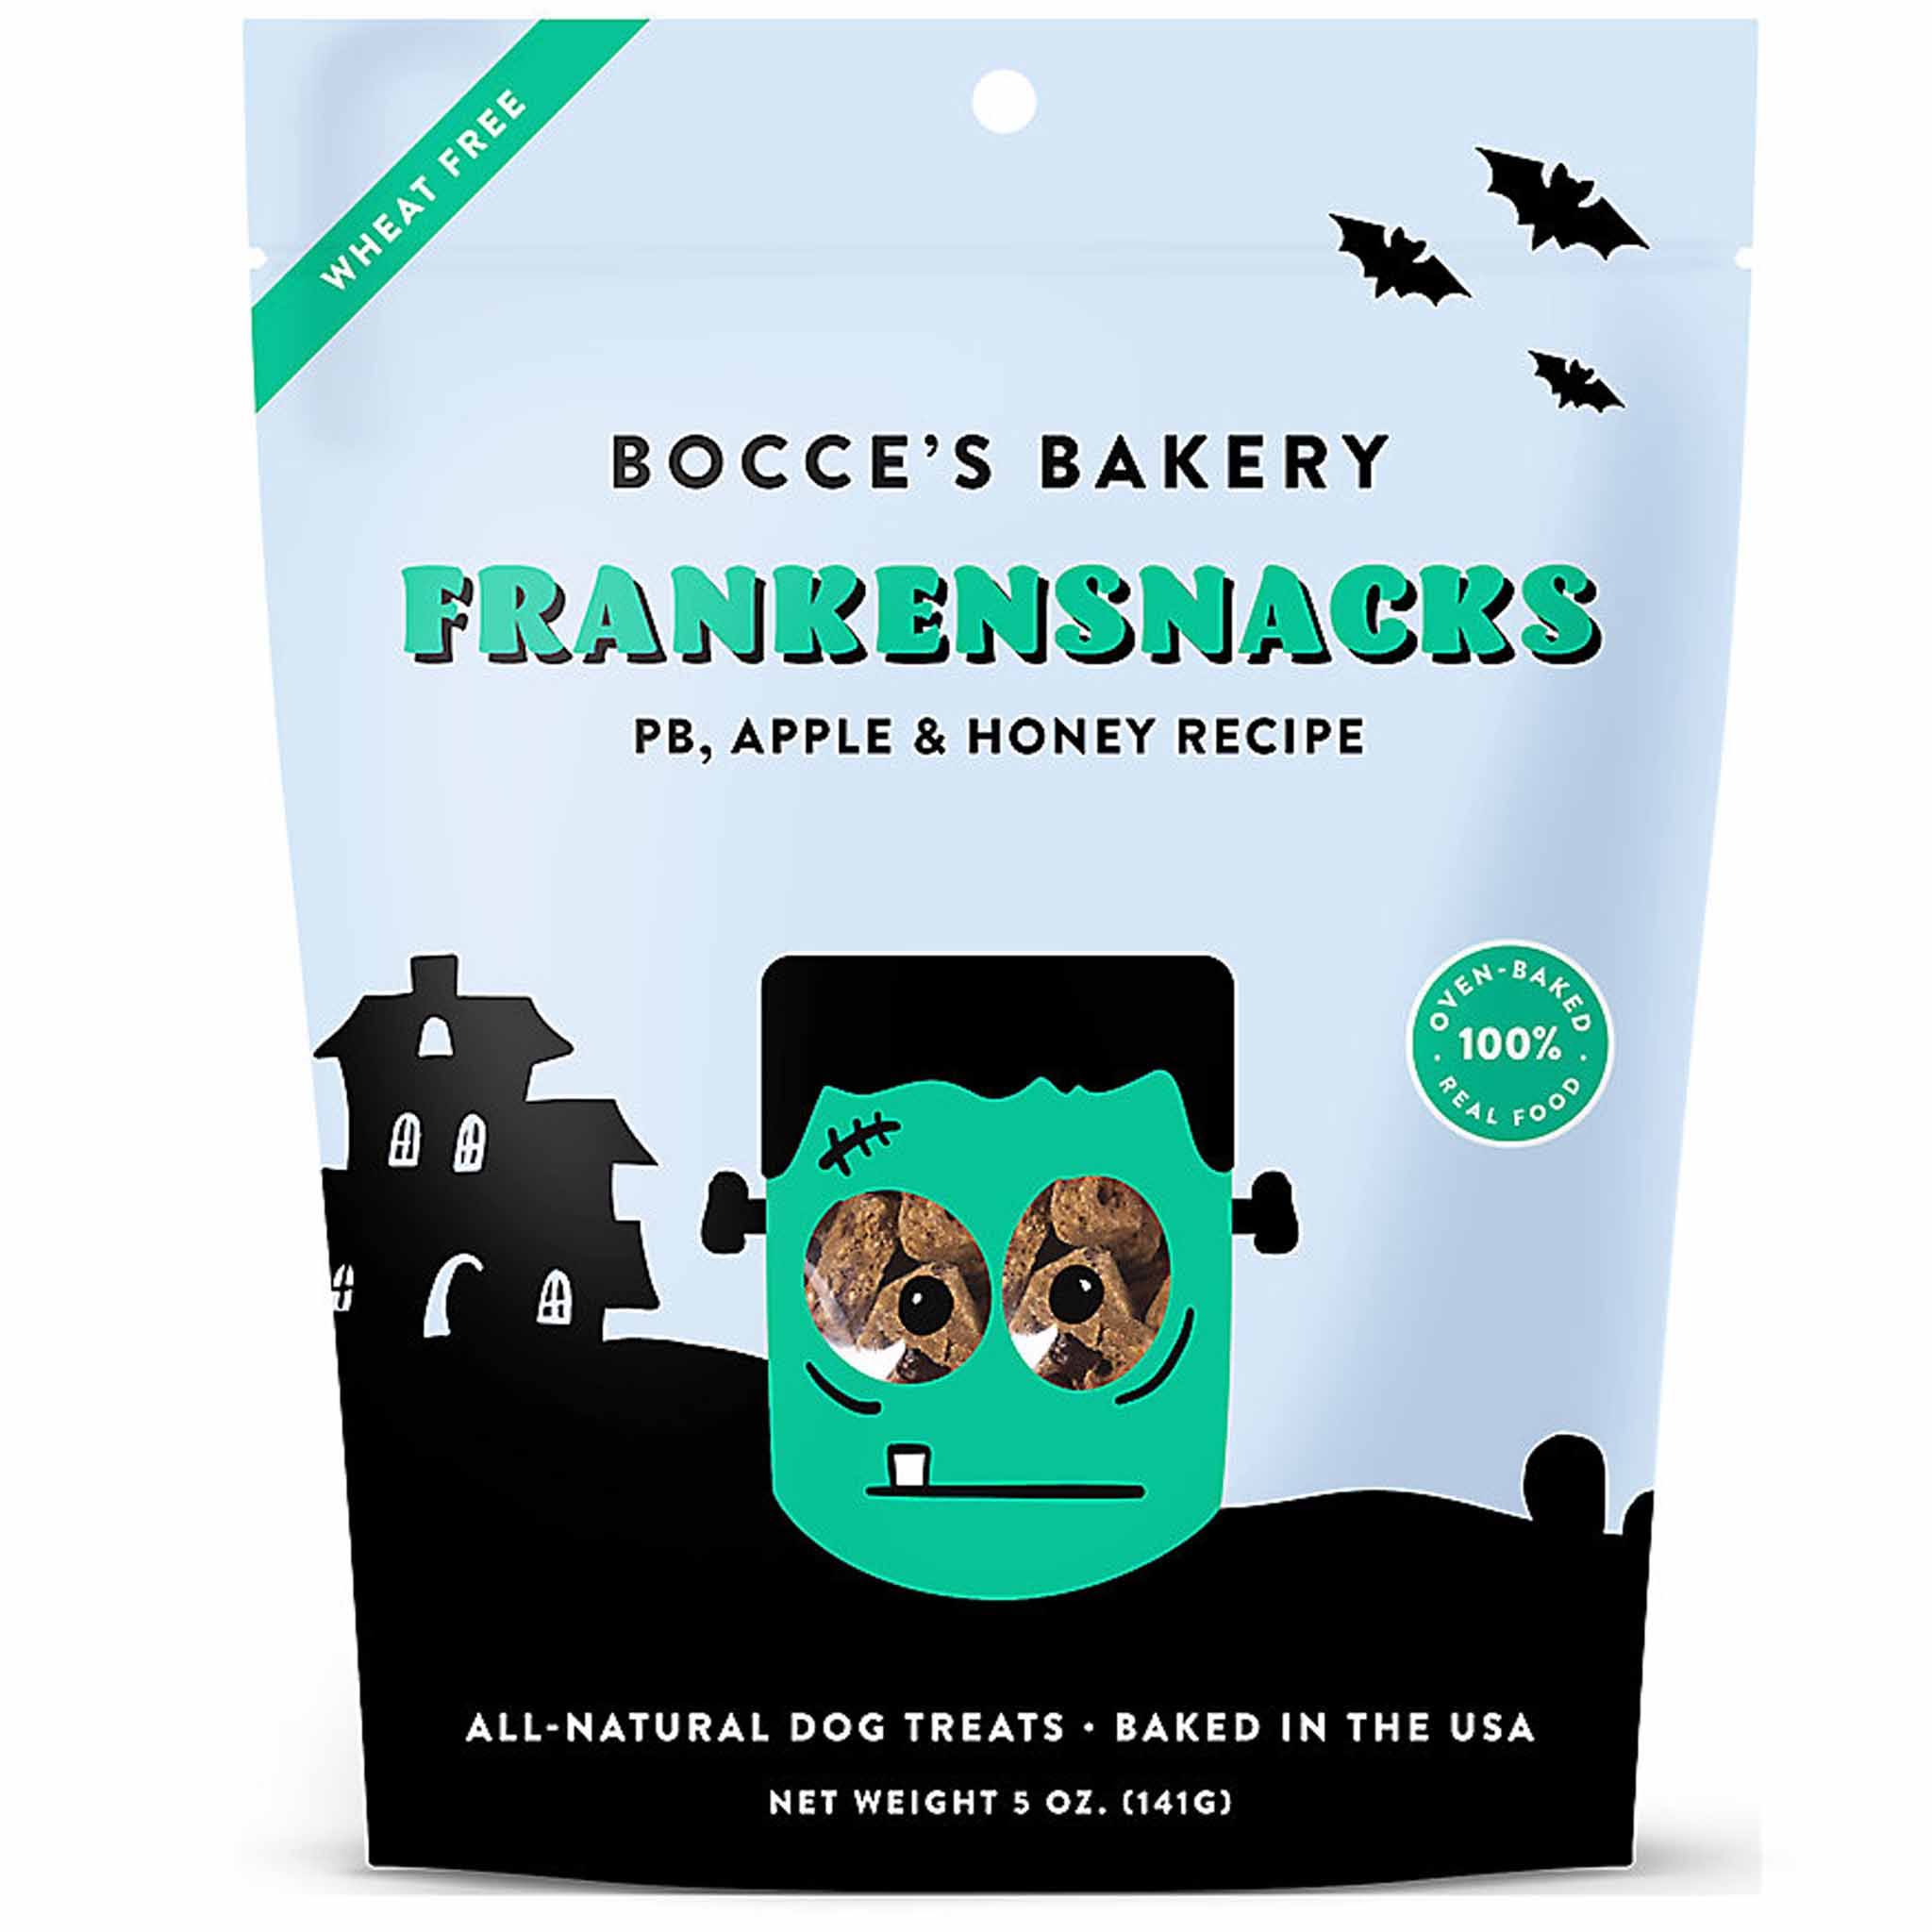 Bocce's Bakery - Frankensnacks - 5oz